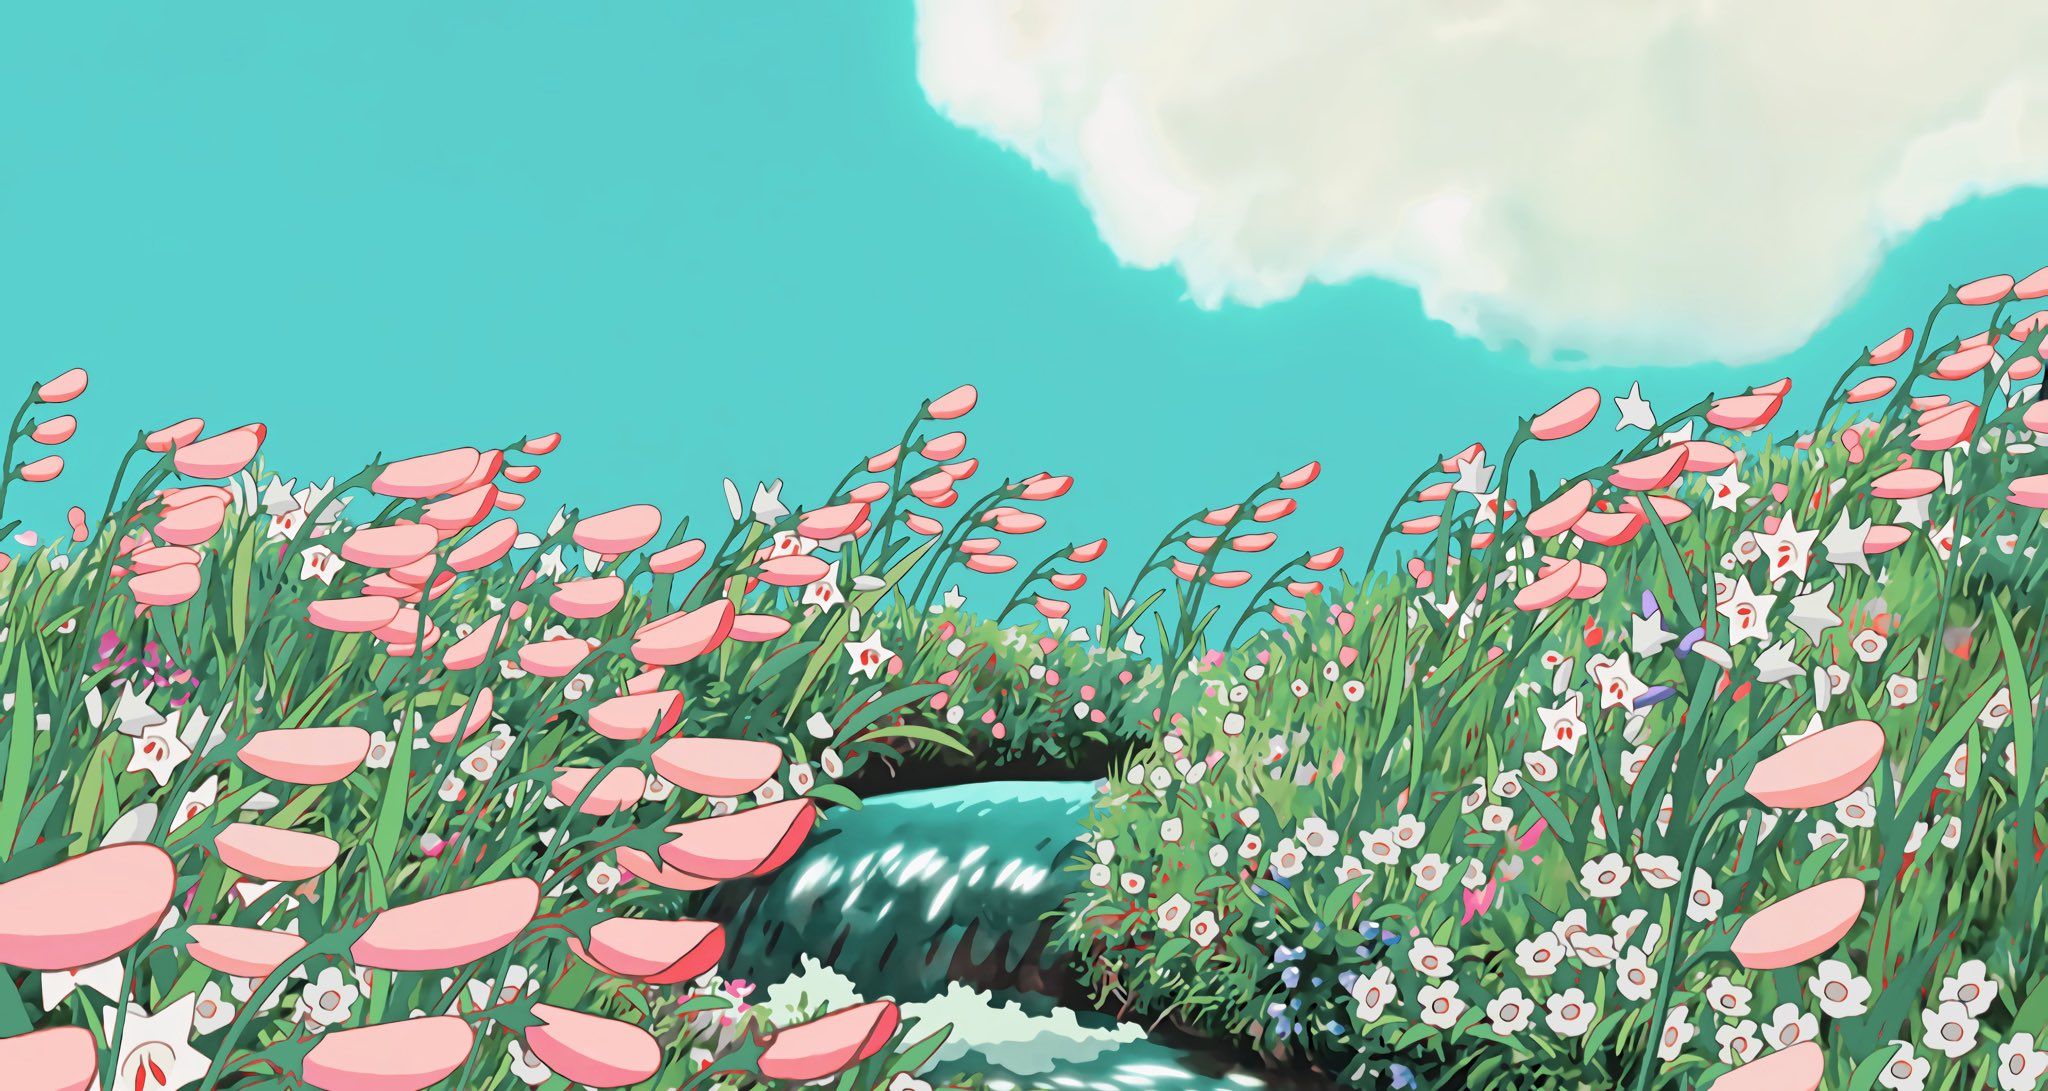 Hình nền Studio Ghibli: Studio Ghibli là một thương hiệu nổi tiếng trong lĩnh vực phim hoạt hình. Khám phá những hình nền độc đáo lấy cảm hứng từ các bộ phim kinh điển của hãng này và cùng trải nghiệm thế giới đầy phép thuật.